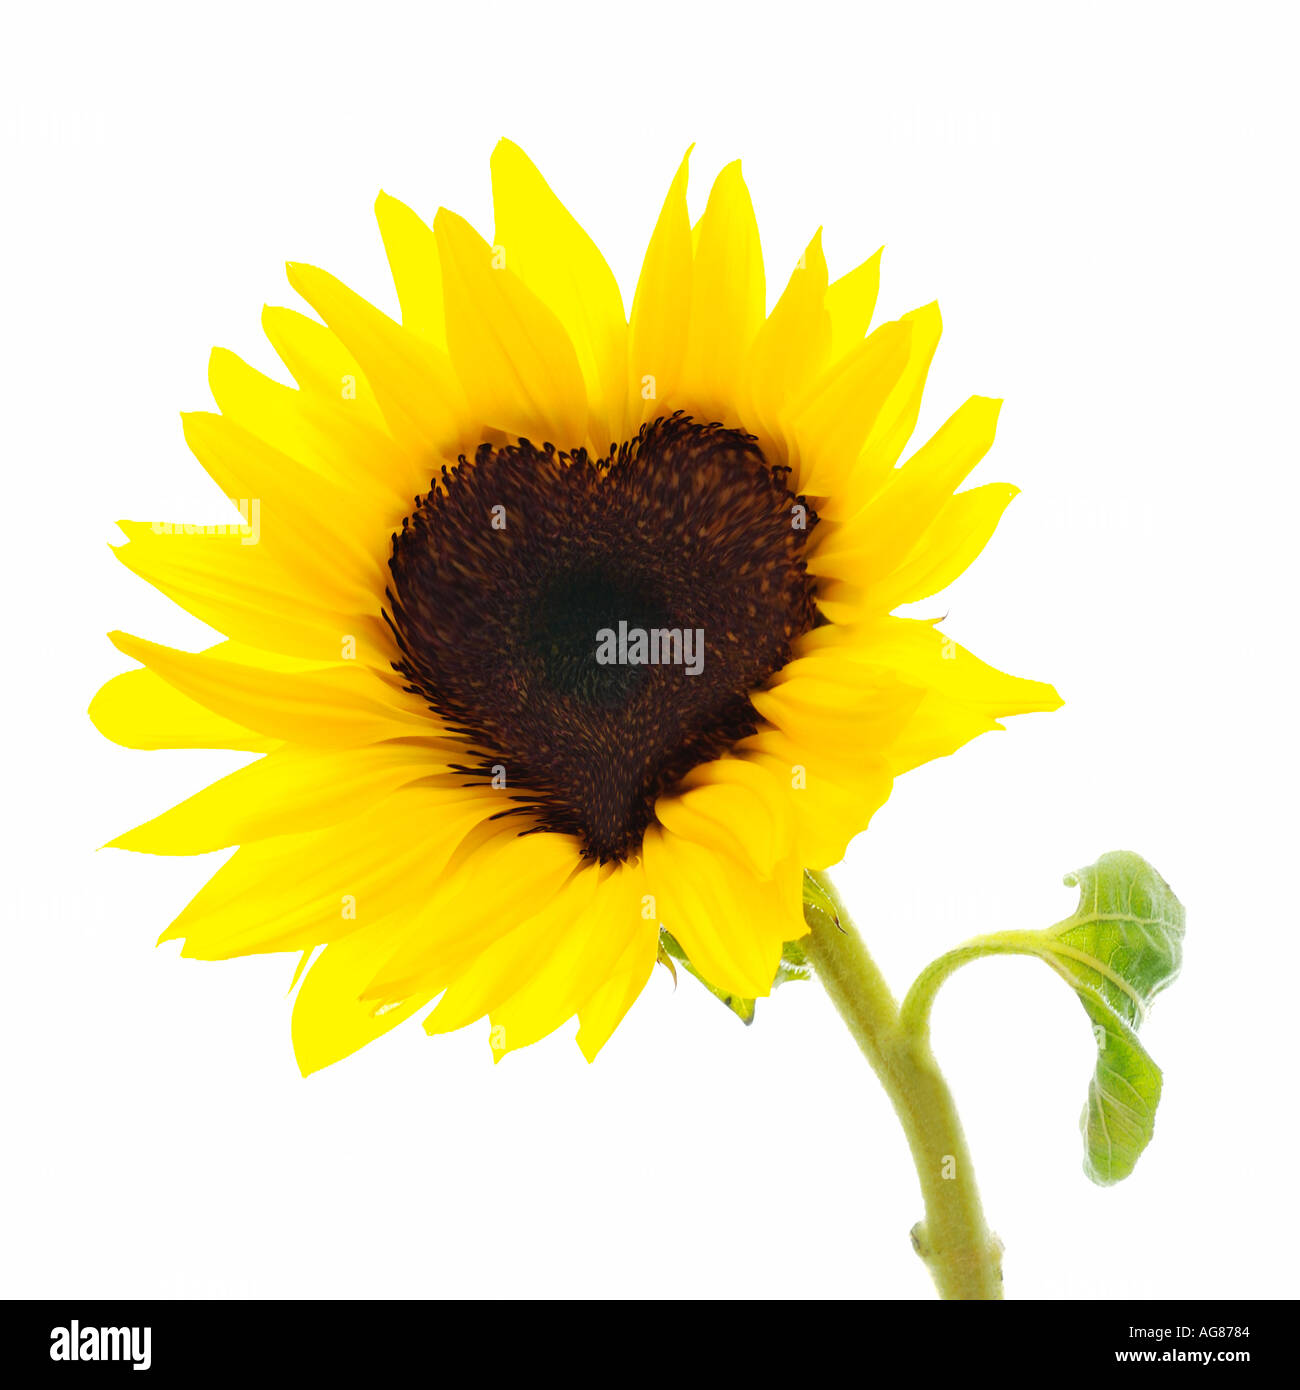 Sonnenblume mit Center geändert, um die Herzform haben Stockfoto